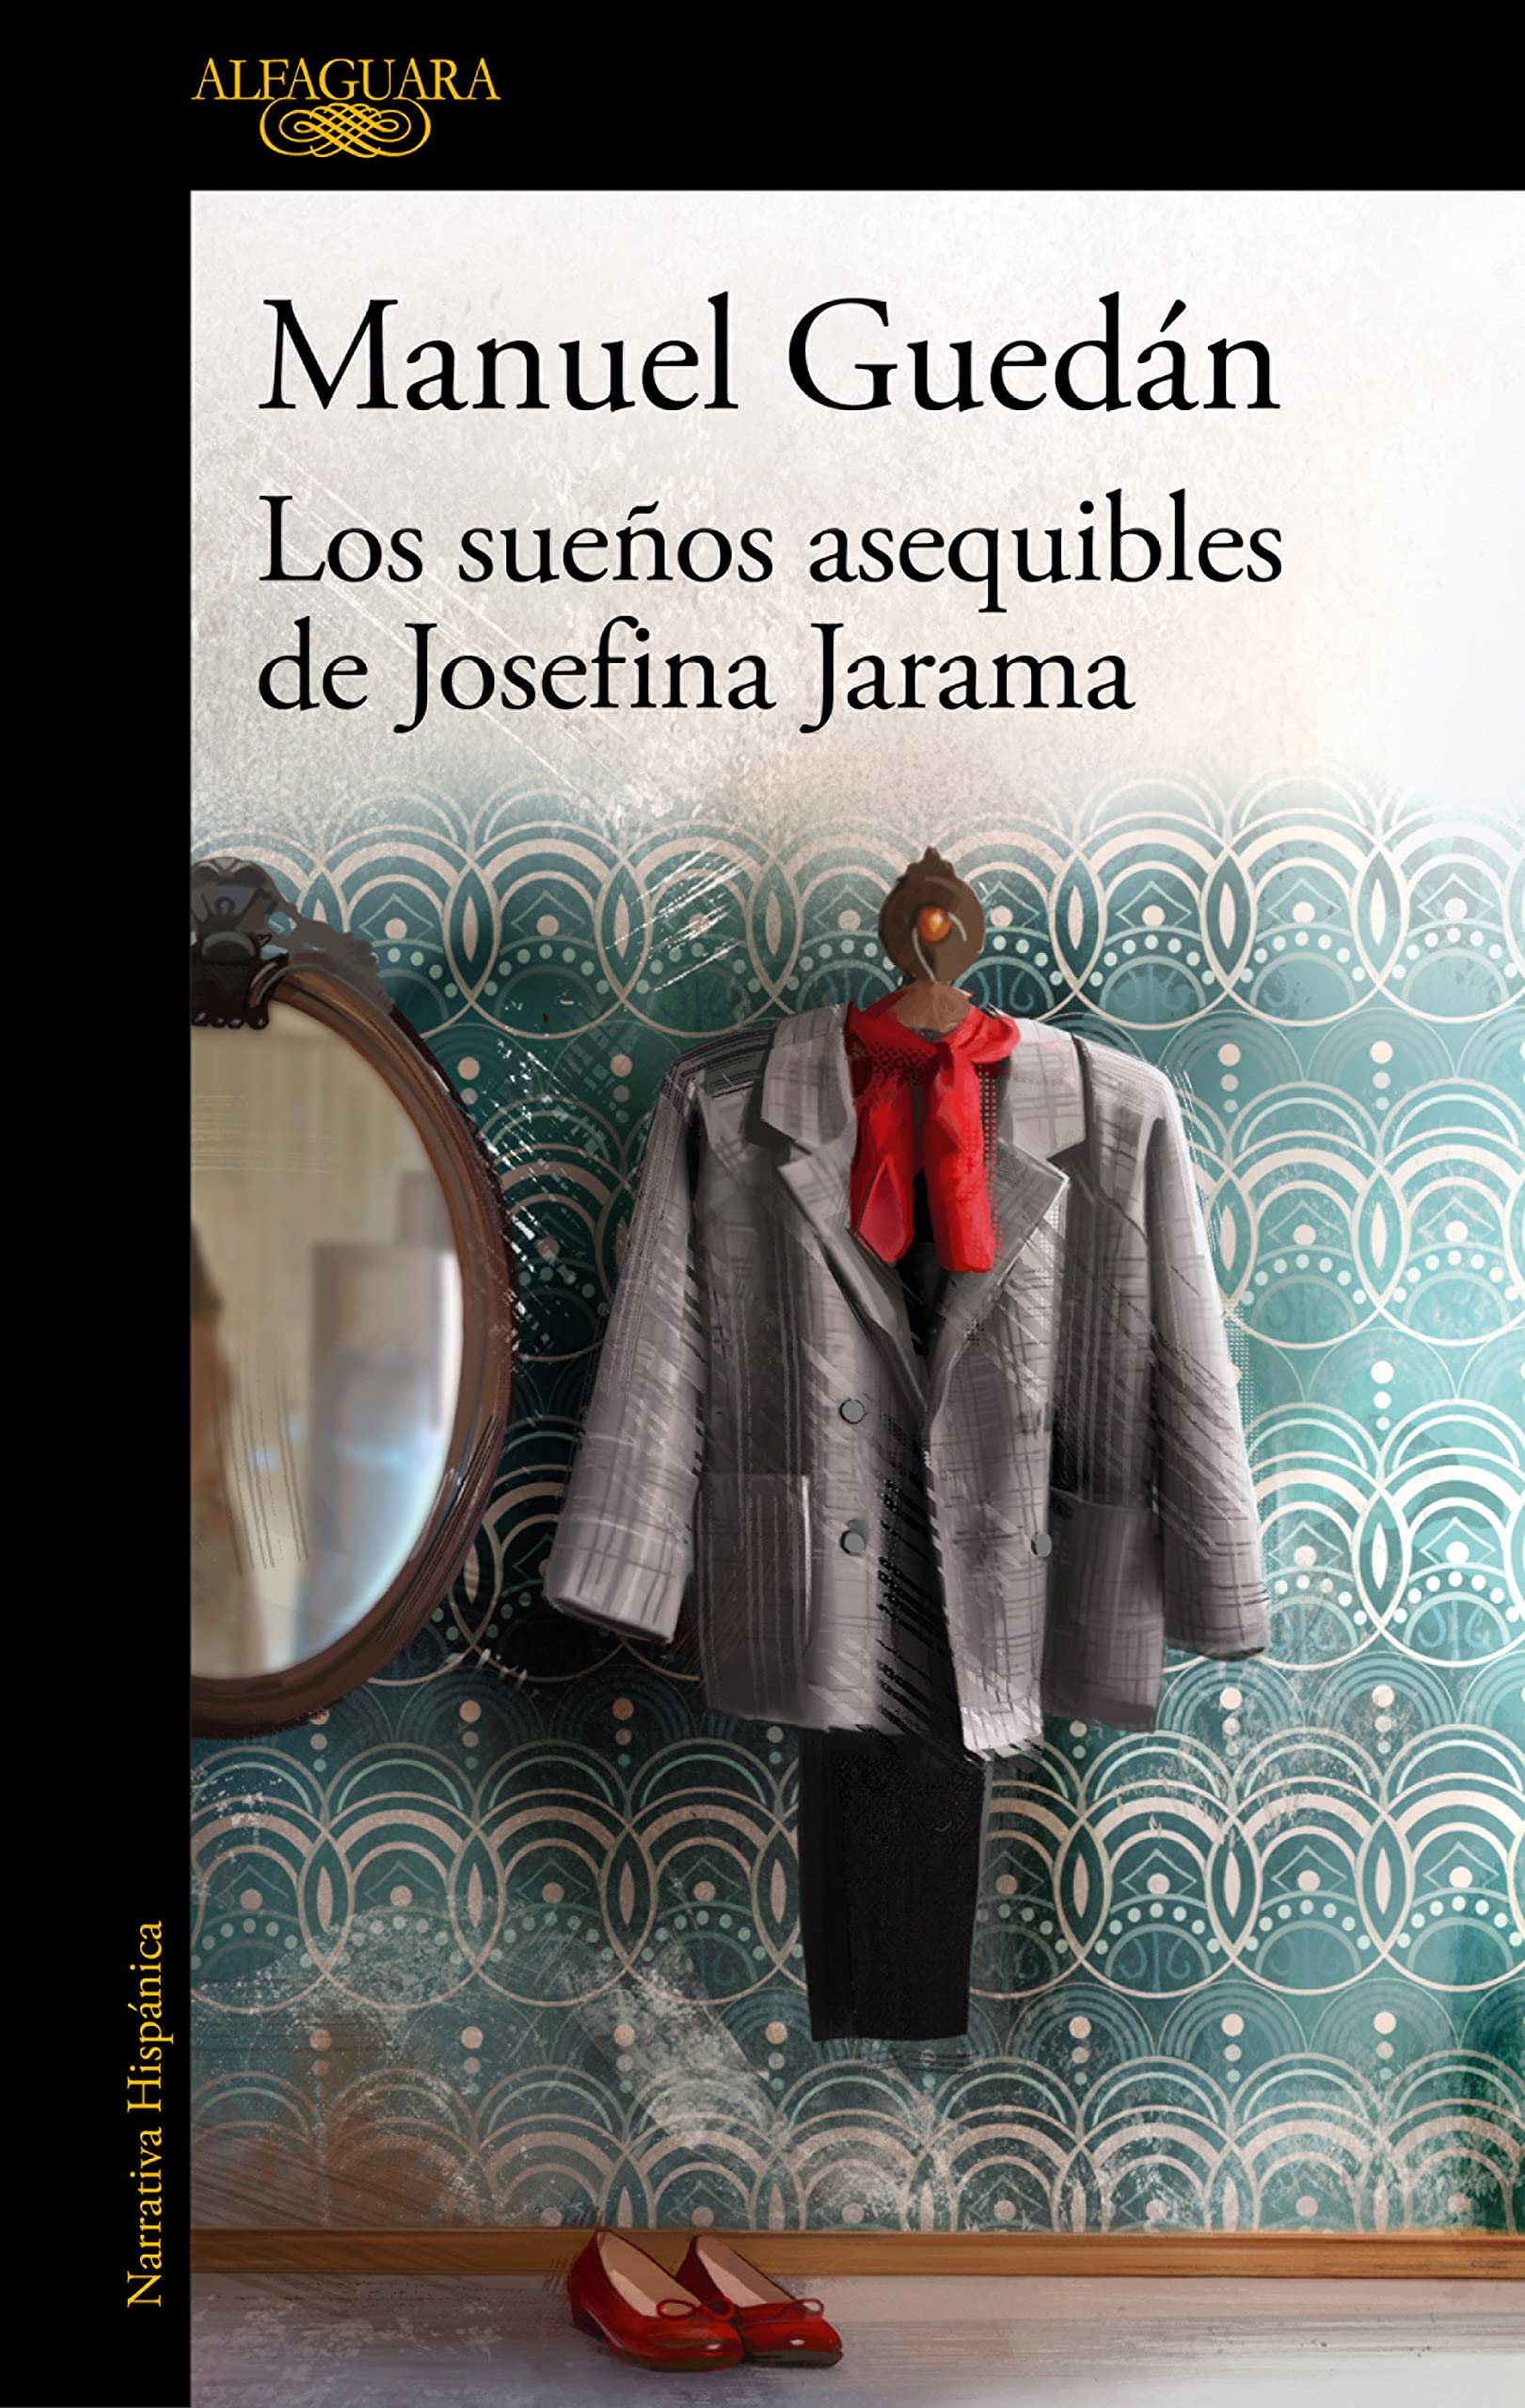 Zenda recomienda: Los sueños asequibles de Josefina Jarama, de Manuel Guedán